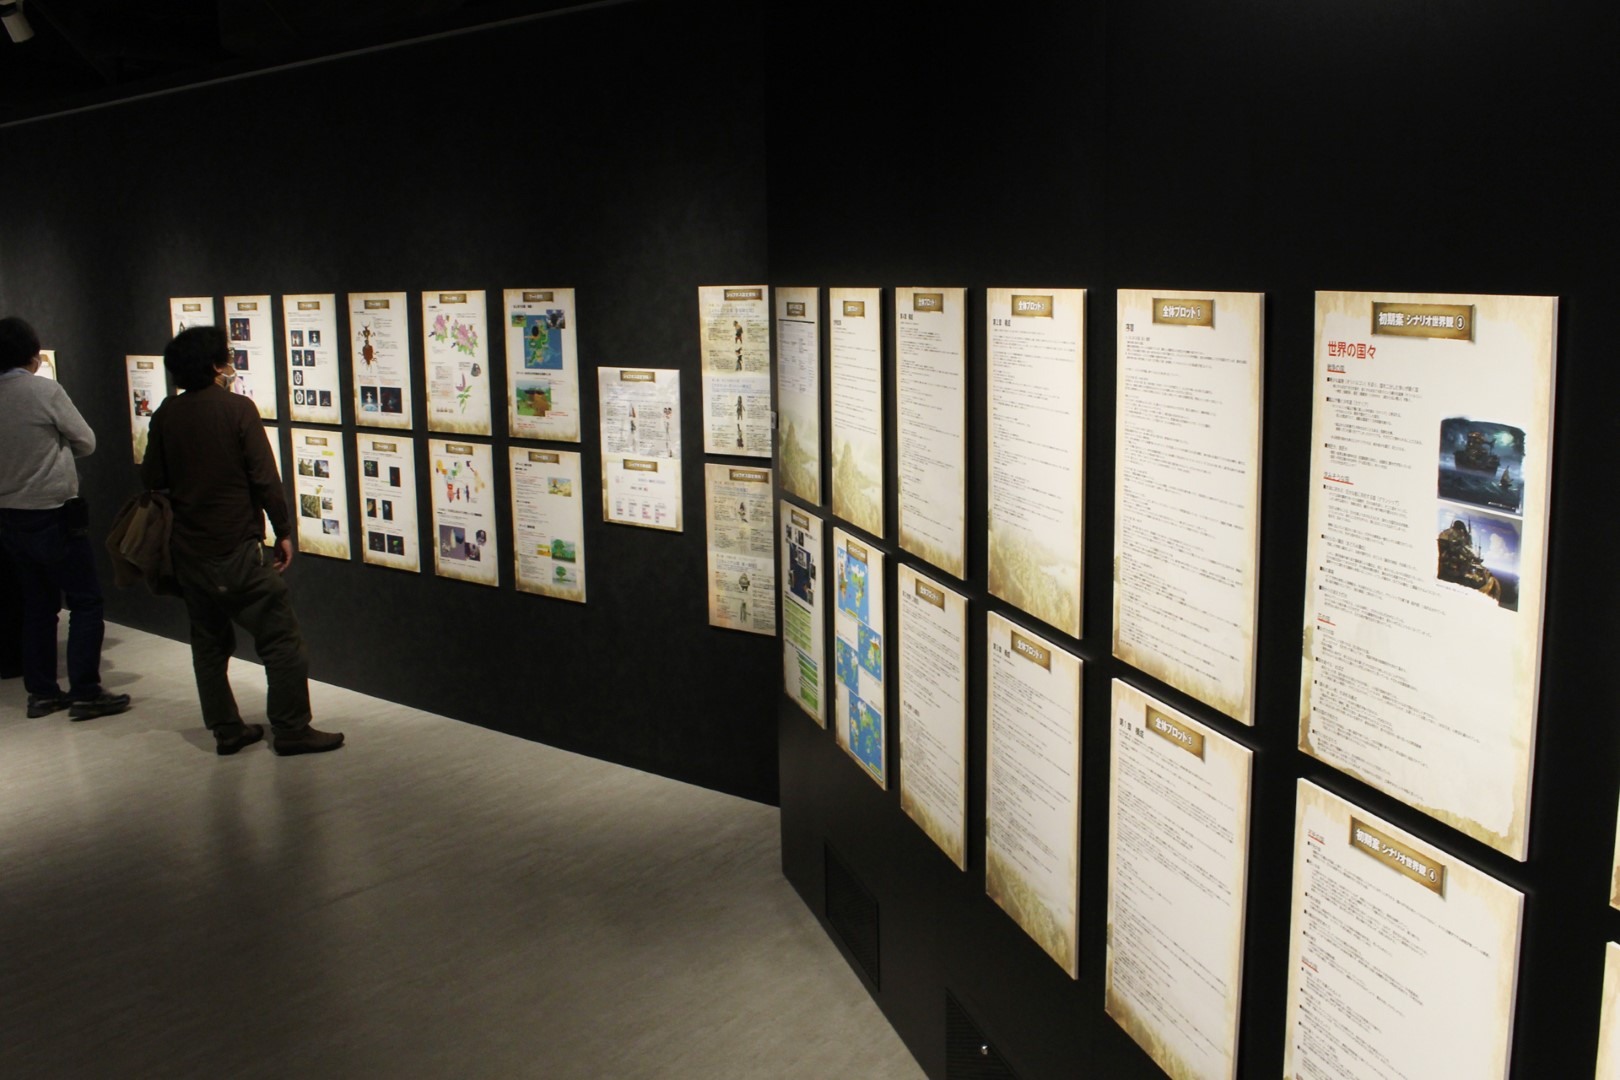 日本《Bravely Default》10 周年记念展现场报导展示超过两百张以上插图原画插图36